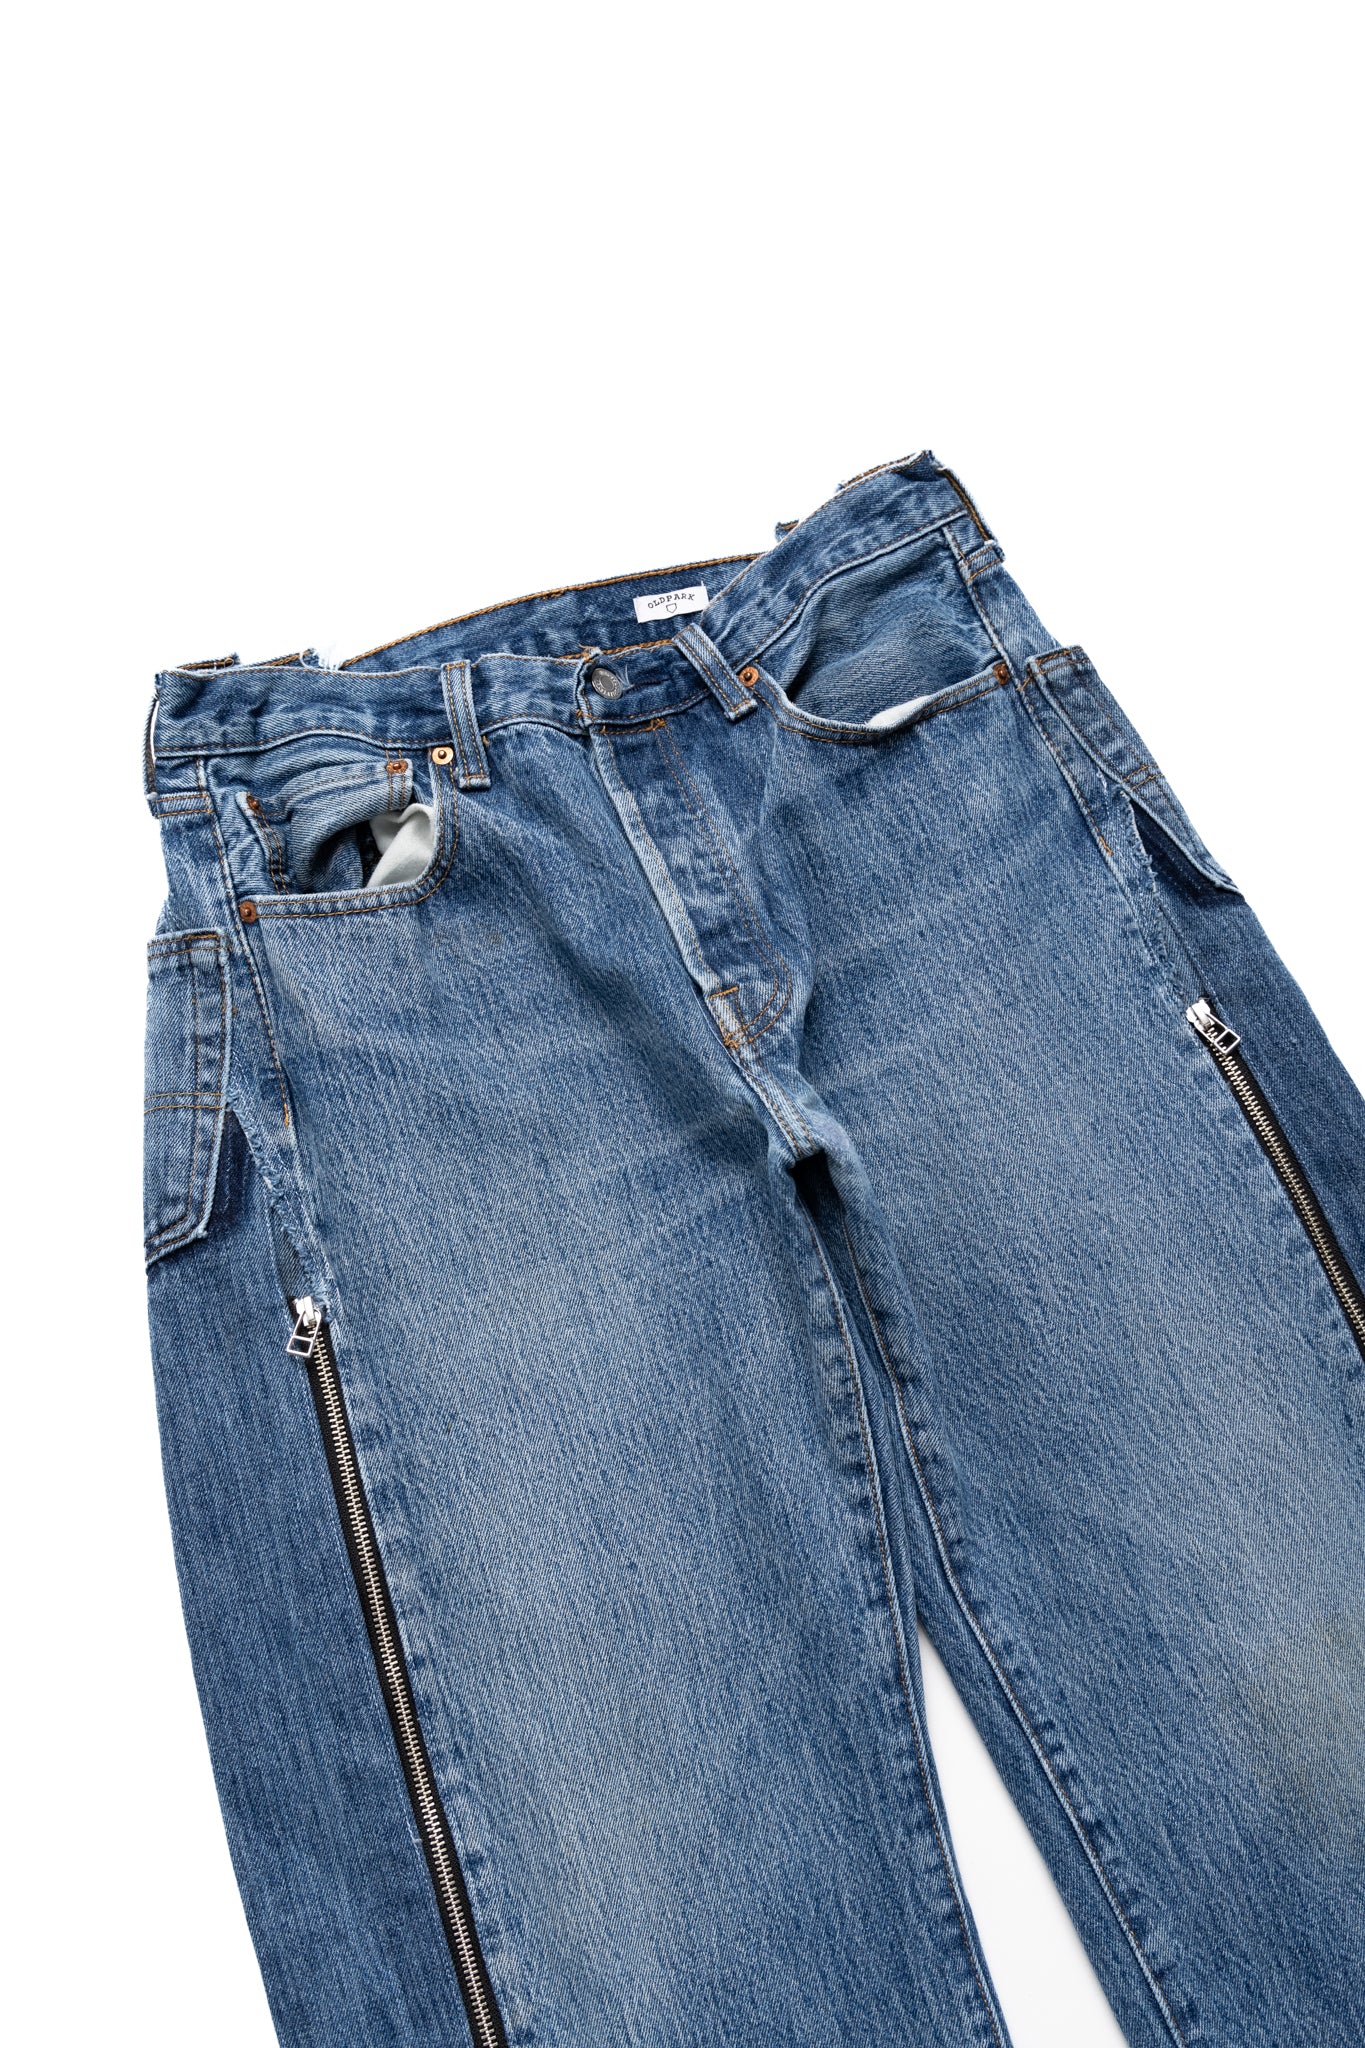 Zip Baggy Jeans Blue - XL (1)